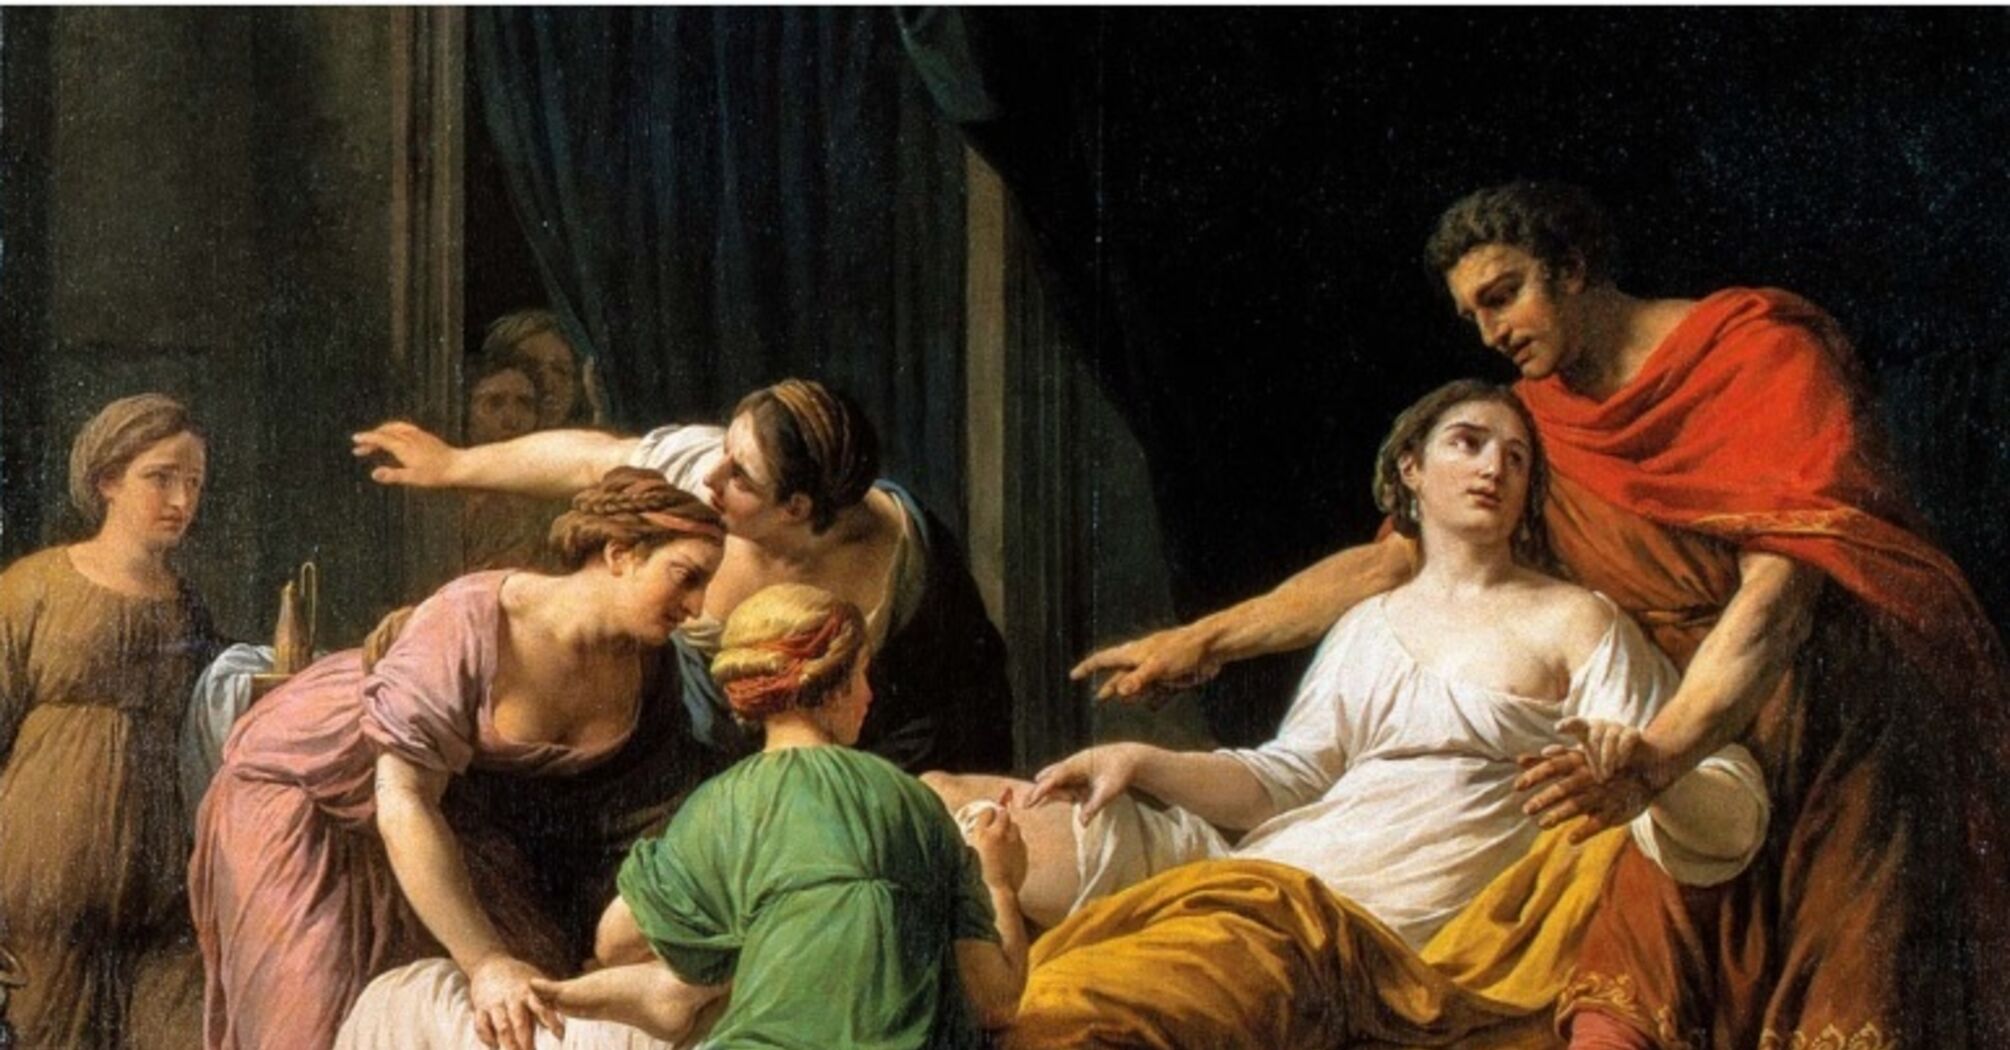 Раскрыта историческая тайна: кем была единственная женщина, причастная к заговору против Цезаря